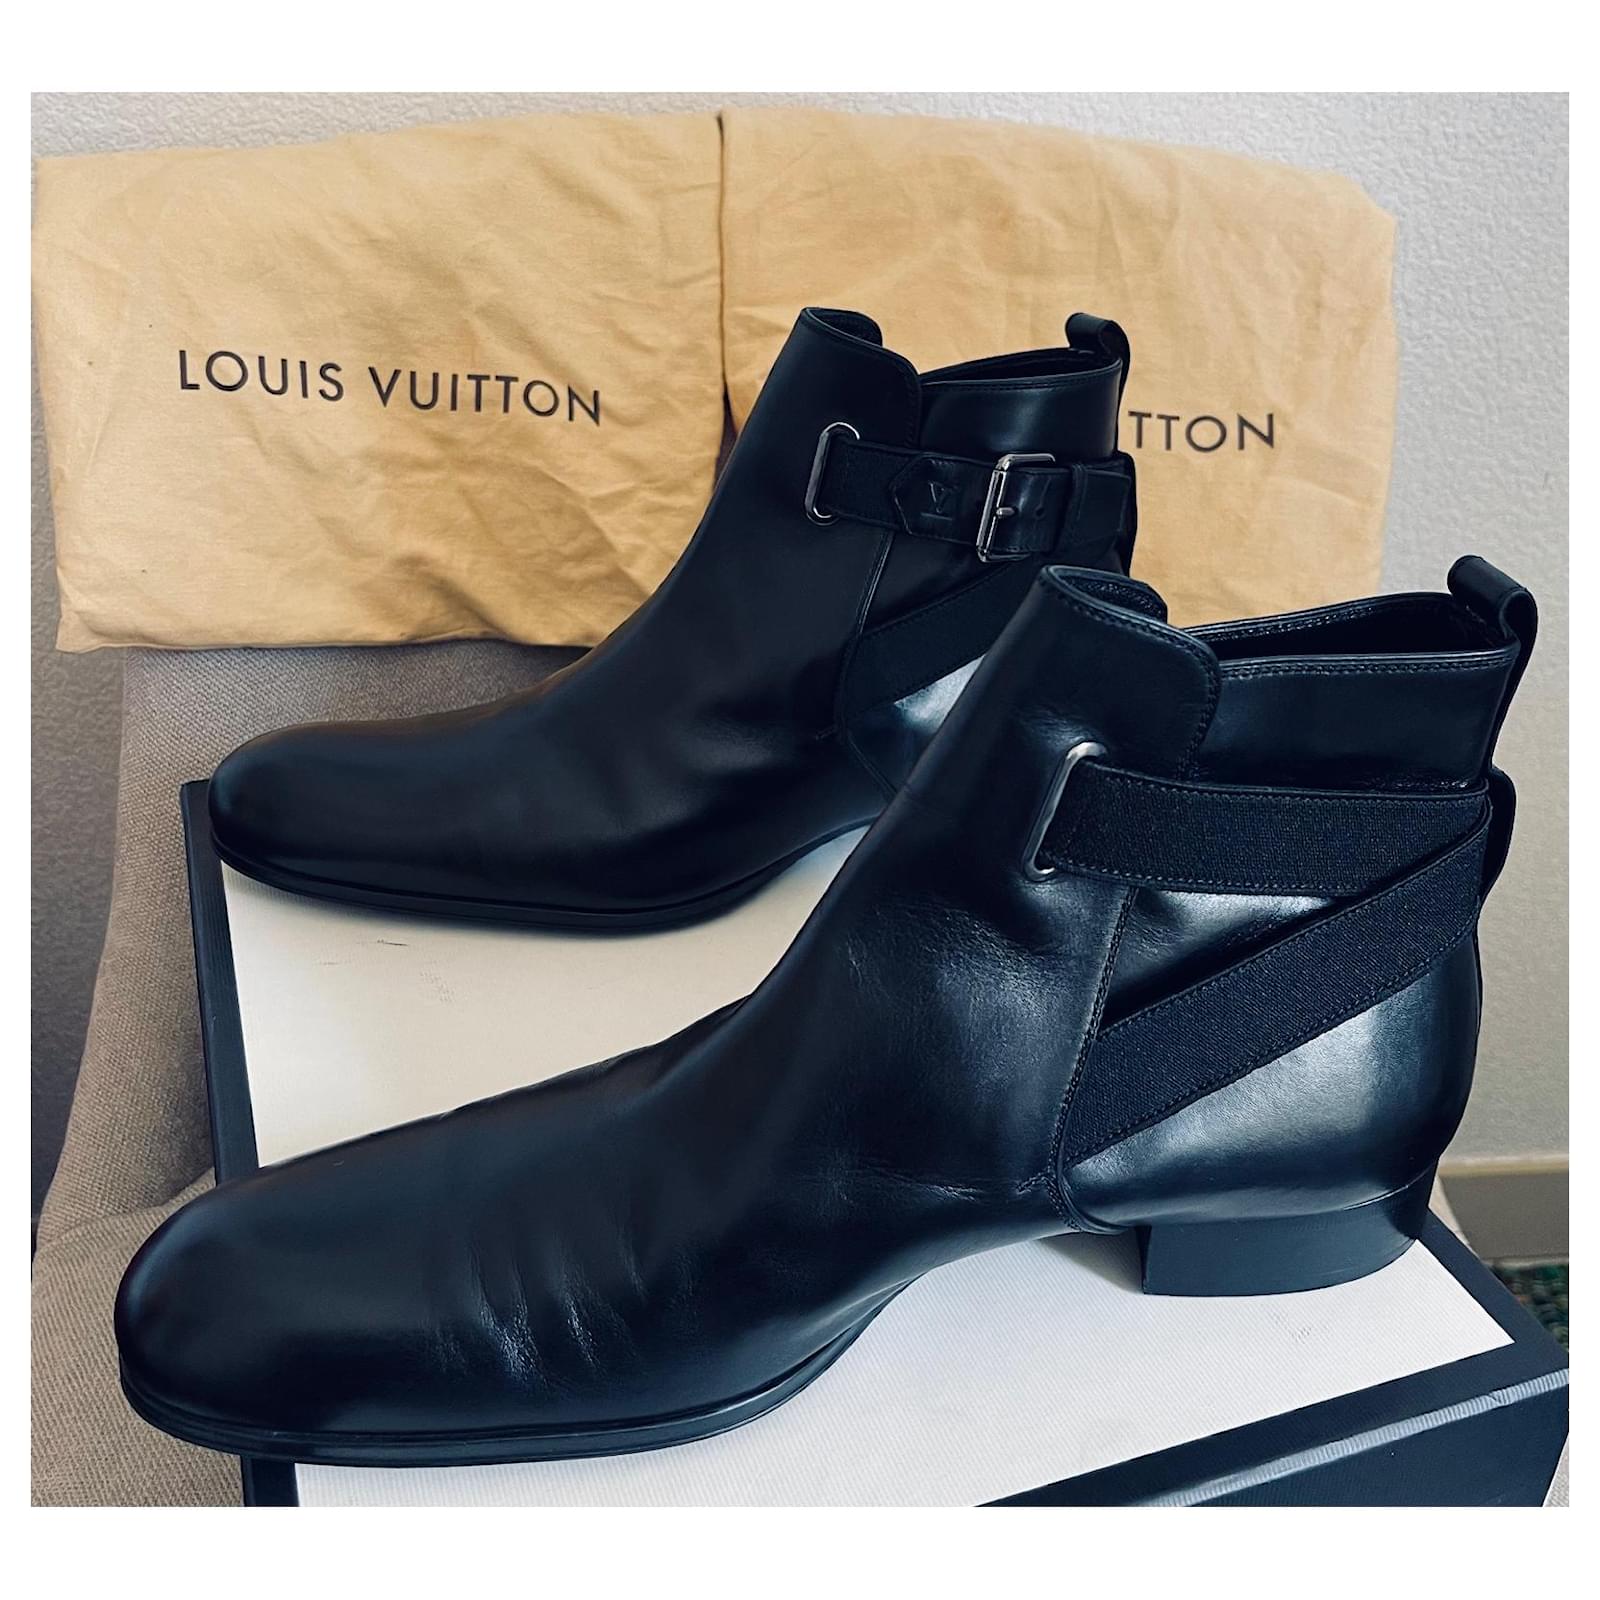 Louis Vuitton Dress Boots For Men's